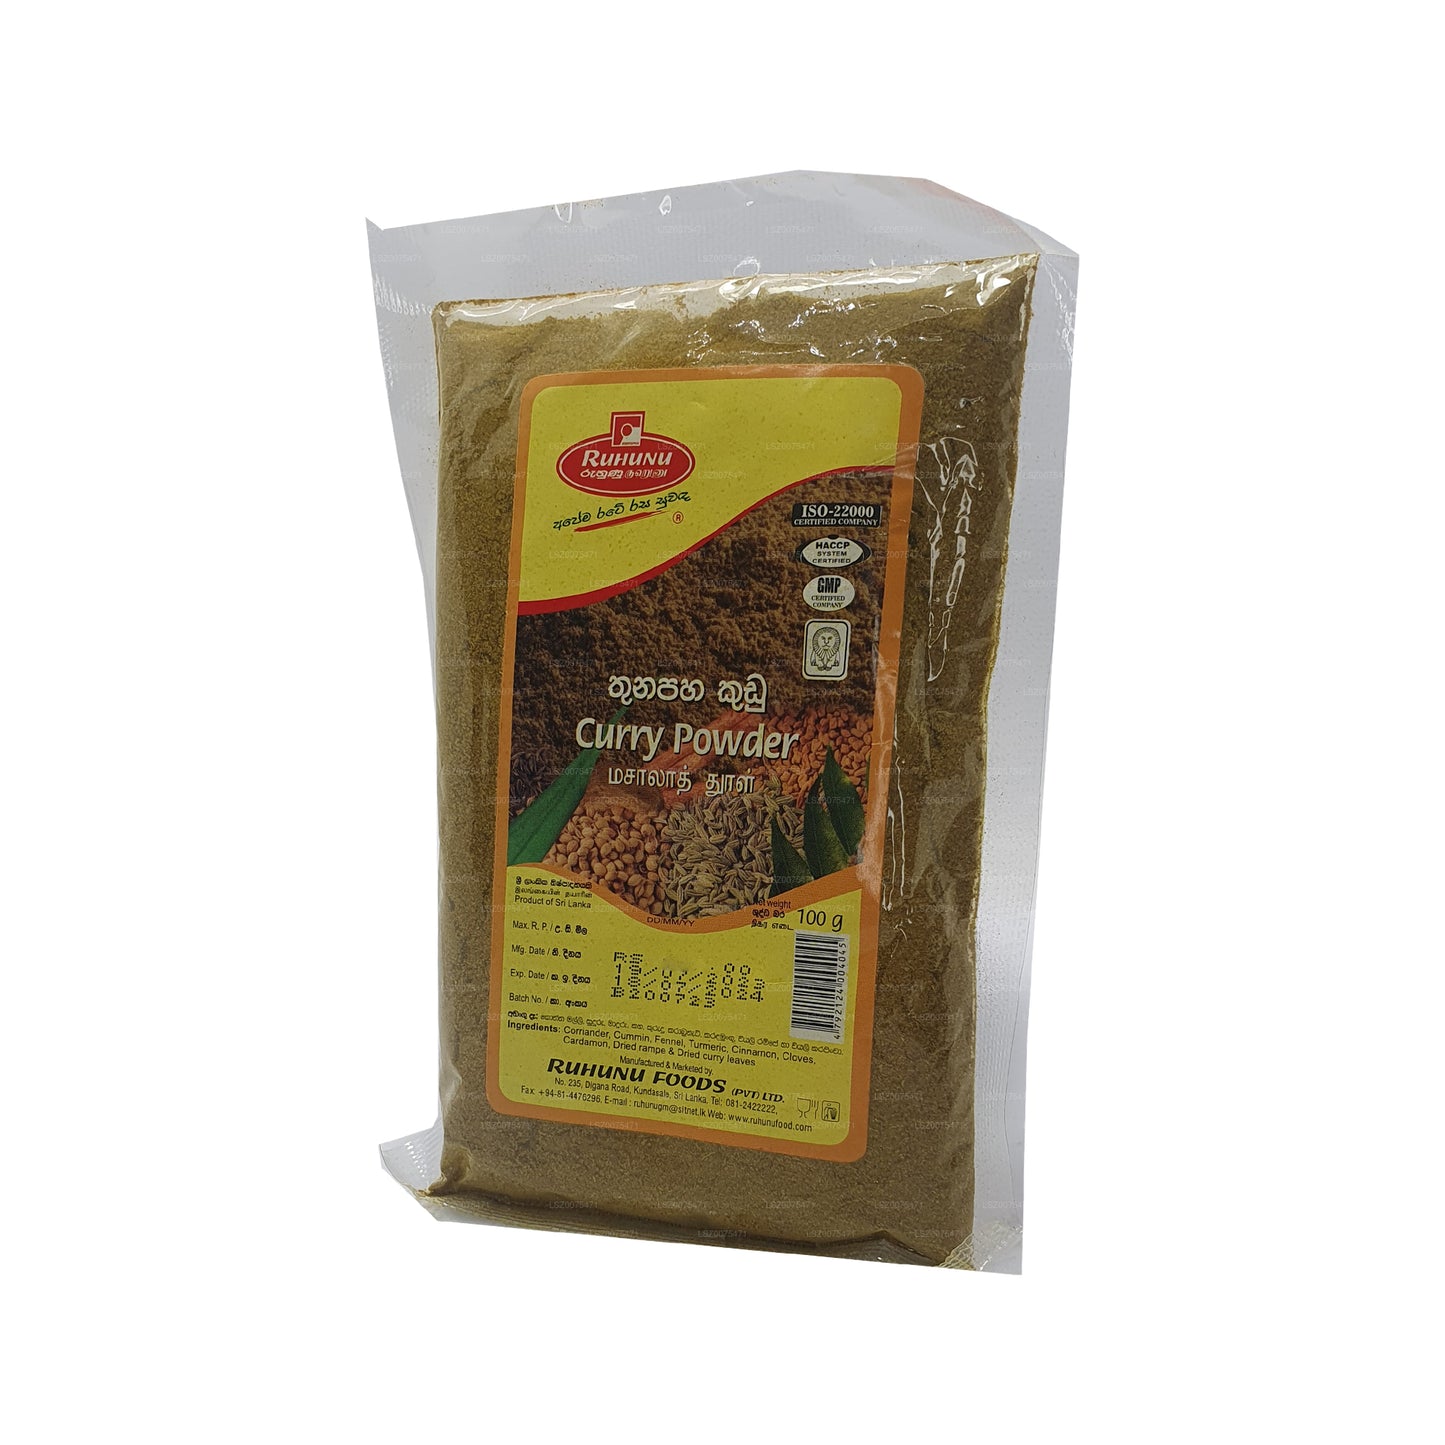 Poudre de curry Ruhunu (100 g)